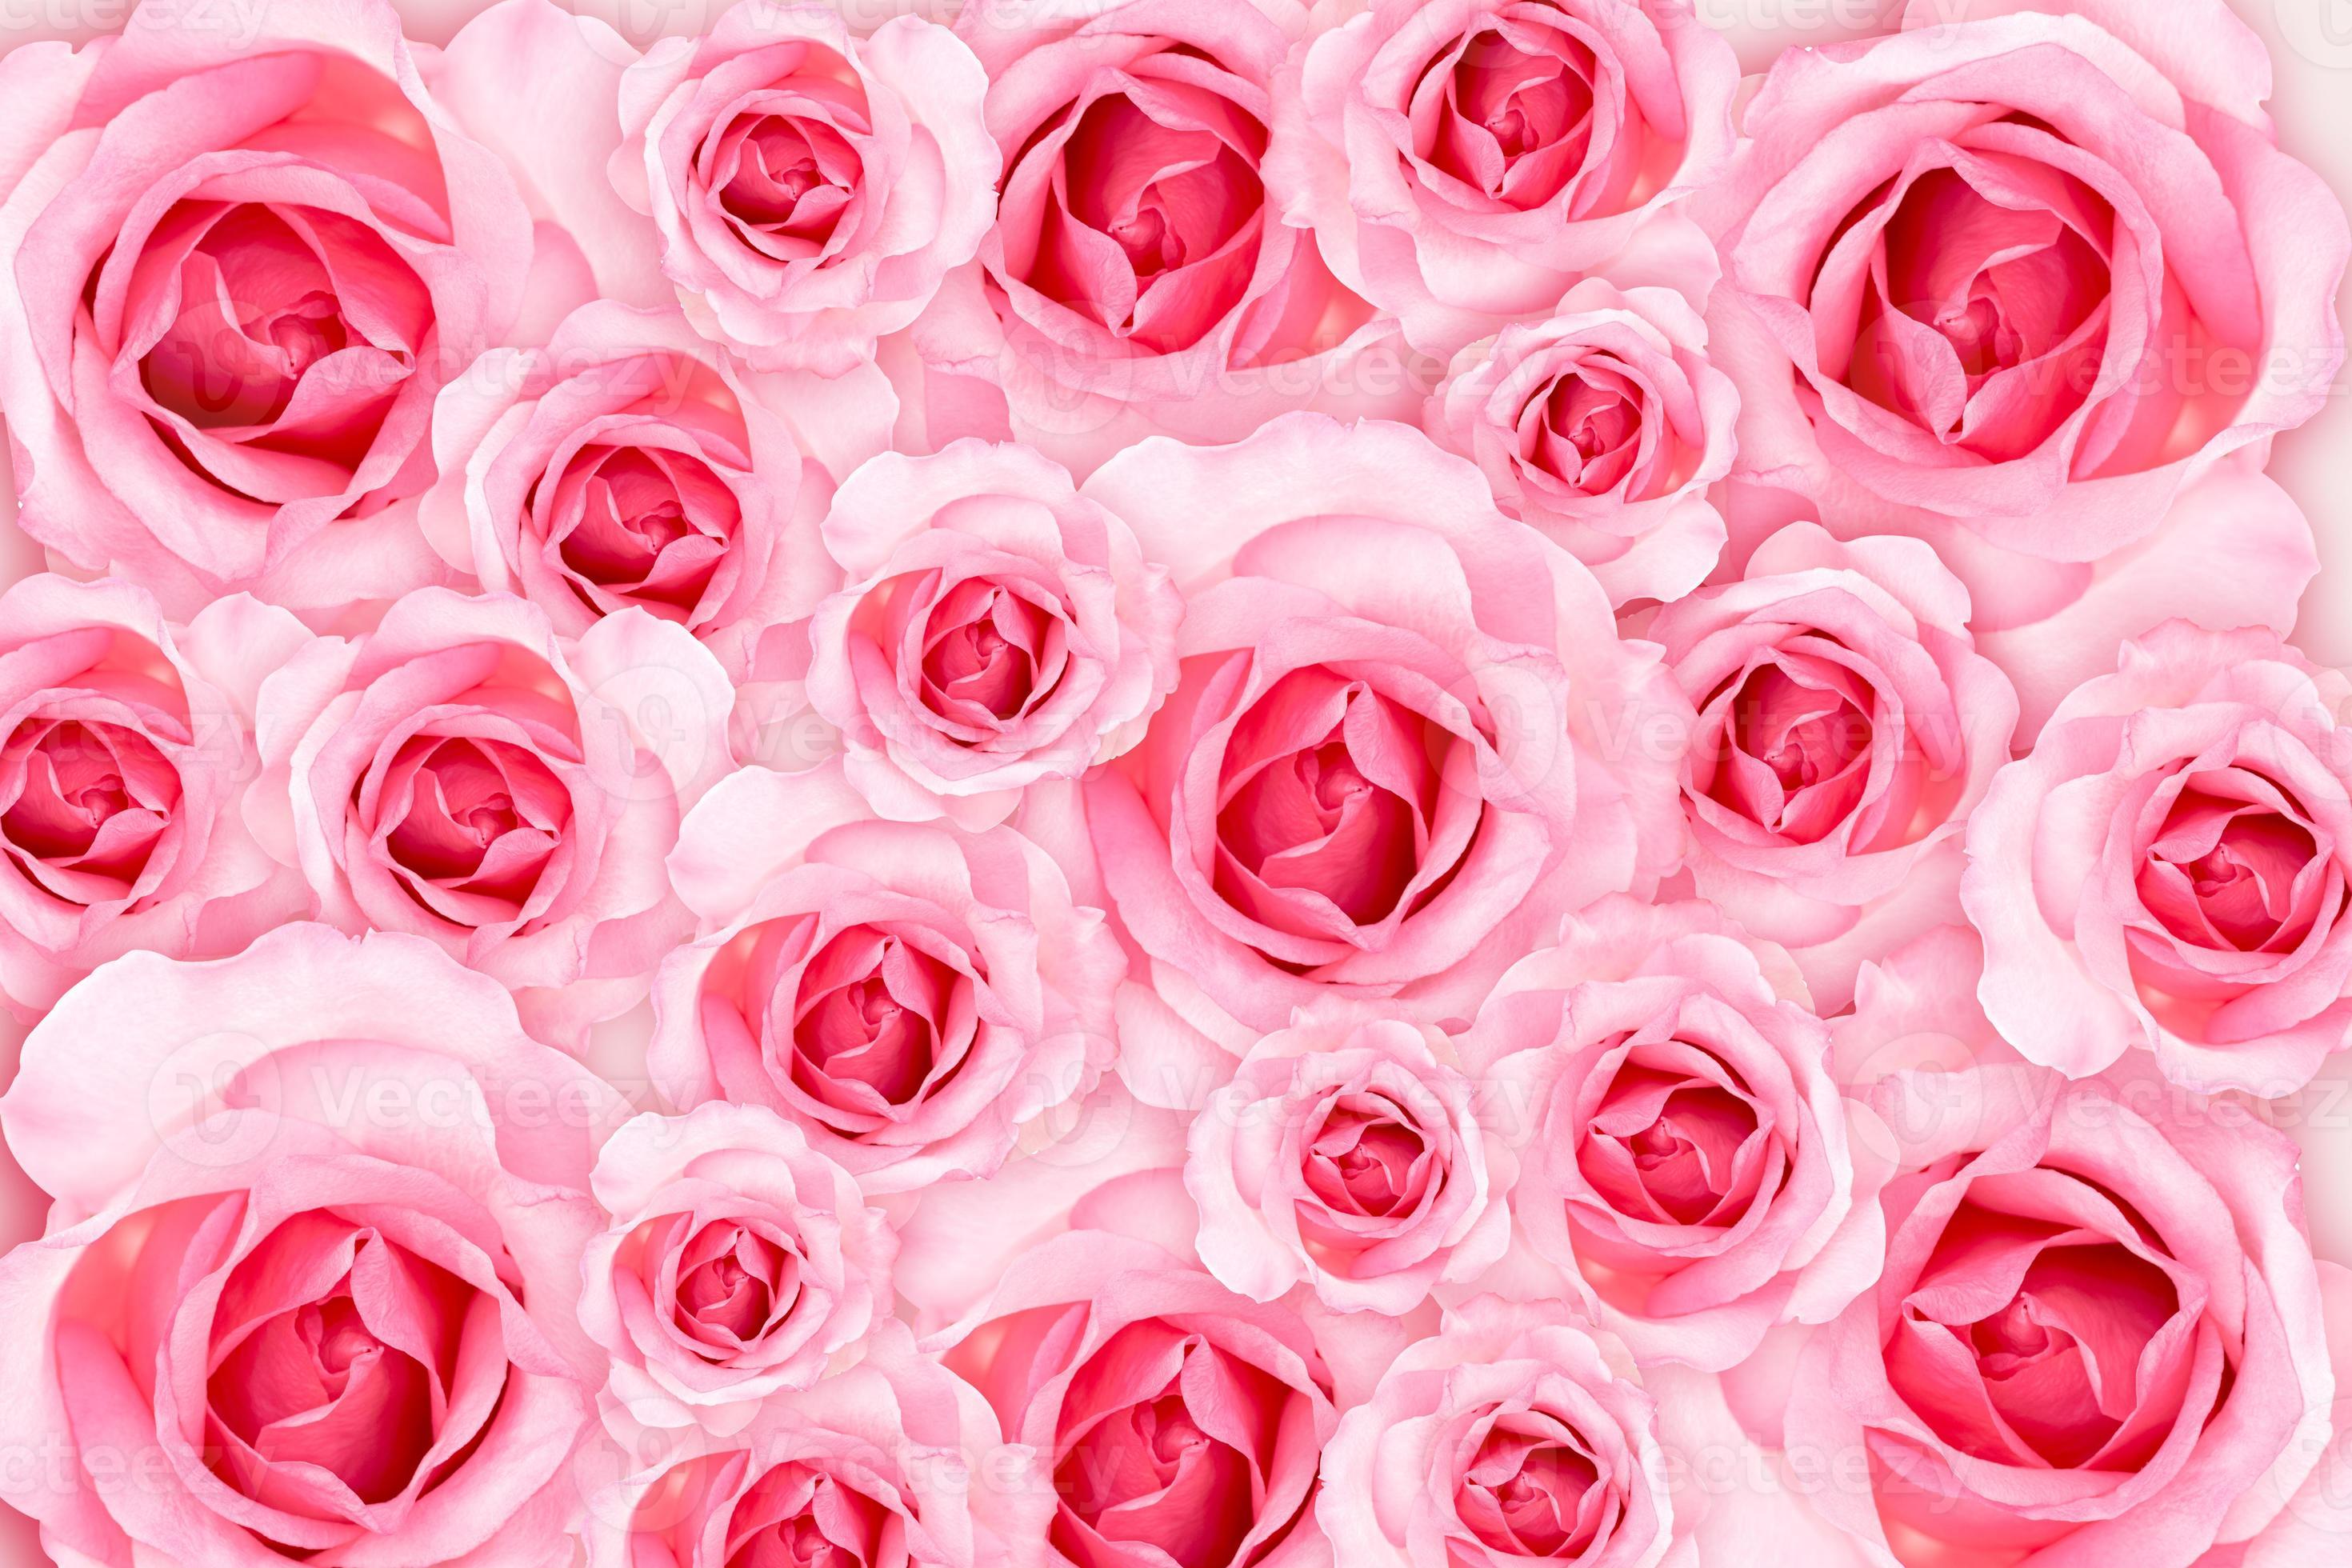 Gửi tới bạn bộ sưu tập hình nền hoa hồng tuyệt đẹp, những bông hoa mềm mại và quyến rũ mang lại cho không gian của bạn sự hoàn mỹ. Hãy xem ngay hình ảnh để cập nhật cho bộ sưu tập của bạn.